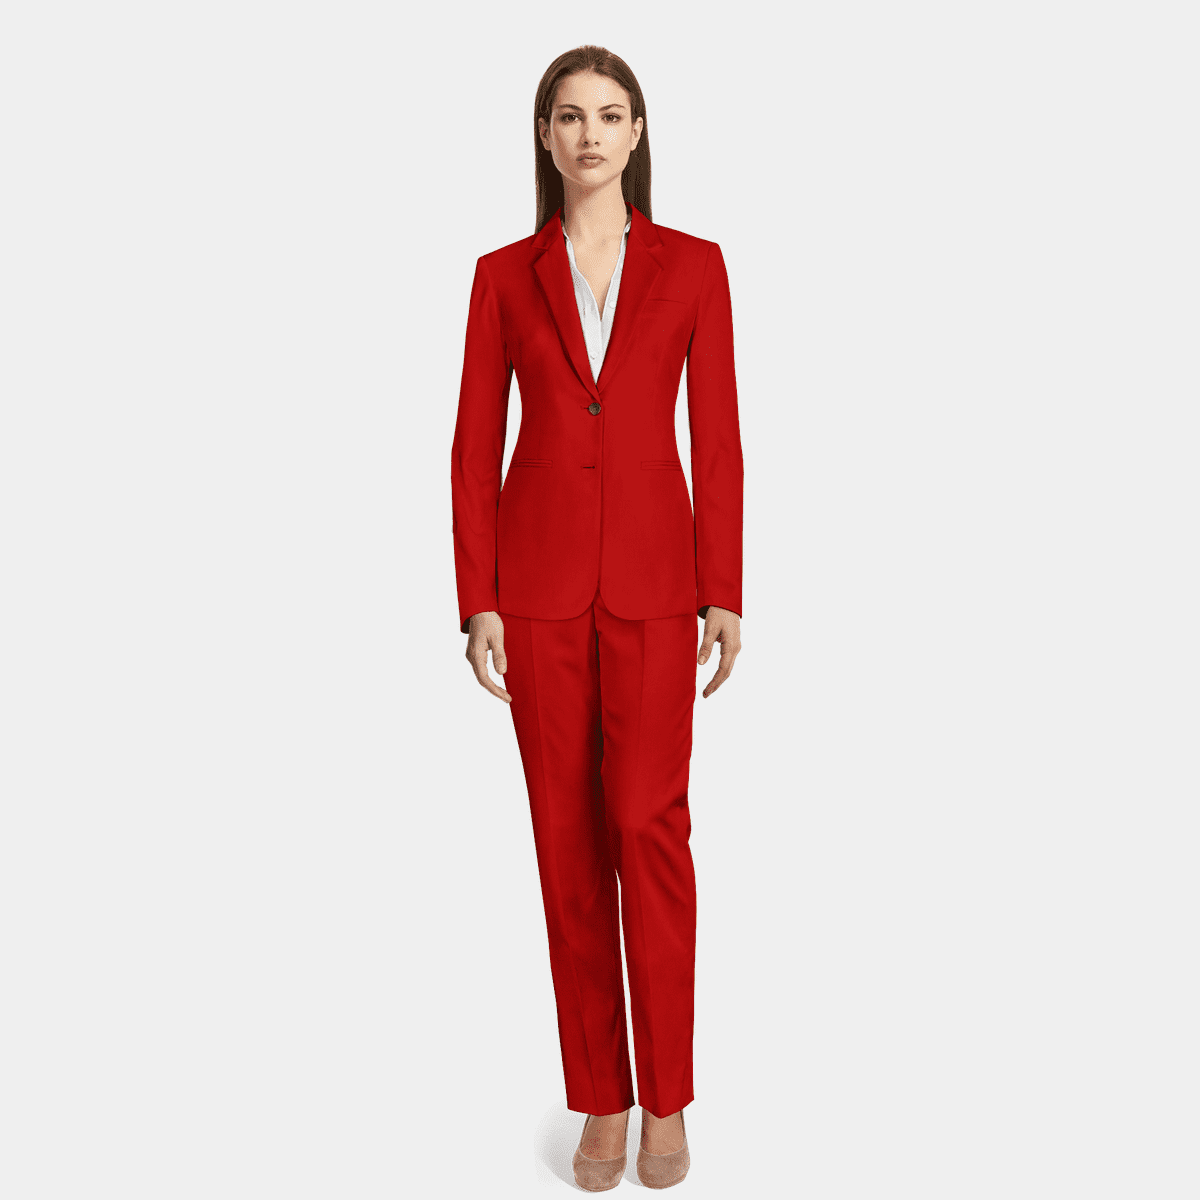 Women Red Luxury Premium Cotton 2 Piece Suit for Office and Prom./women's  Suit Set/women's Suit Set/womens Suit/wedding Suit/business Suit. -   Canada